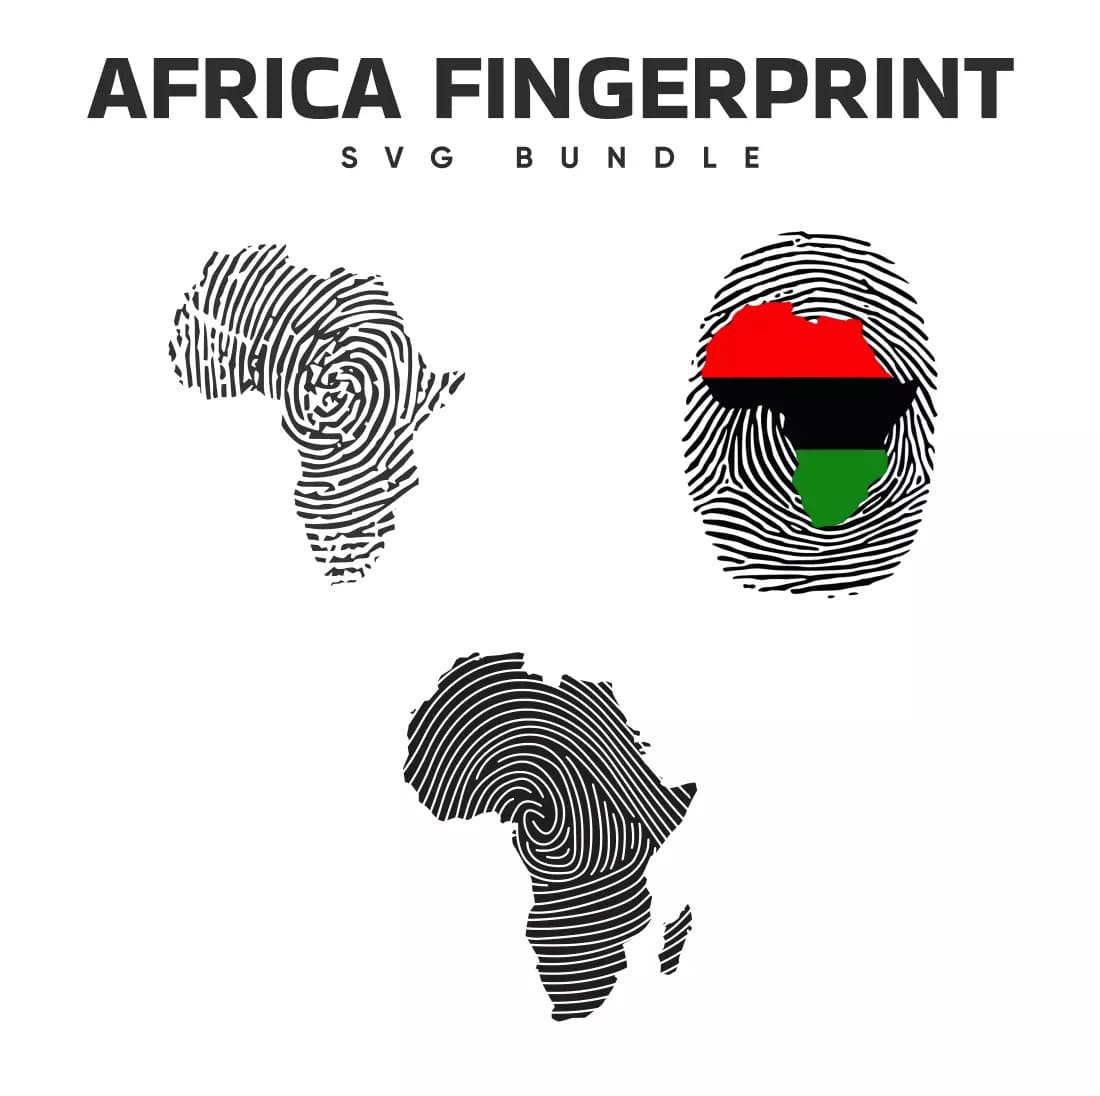 Africa Fingerprint SVG Bundle Preview.